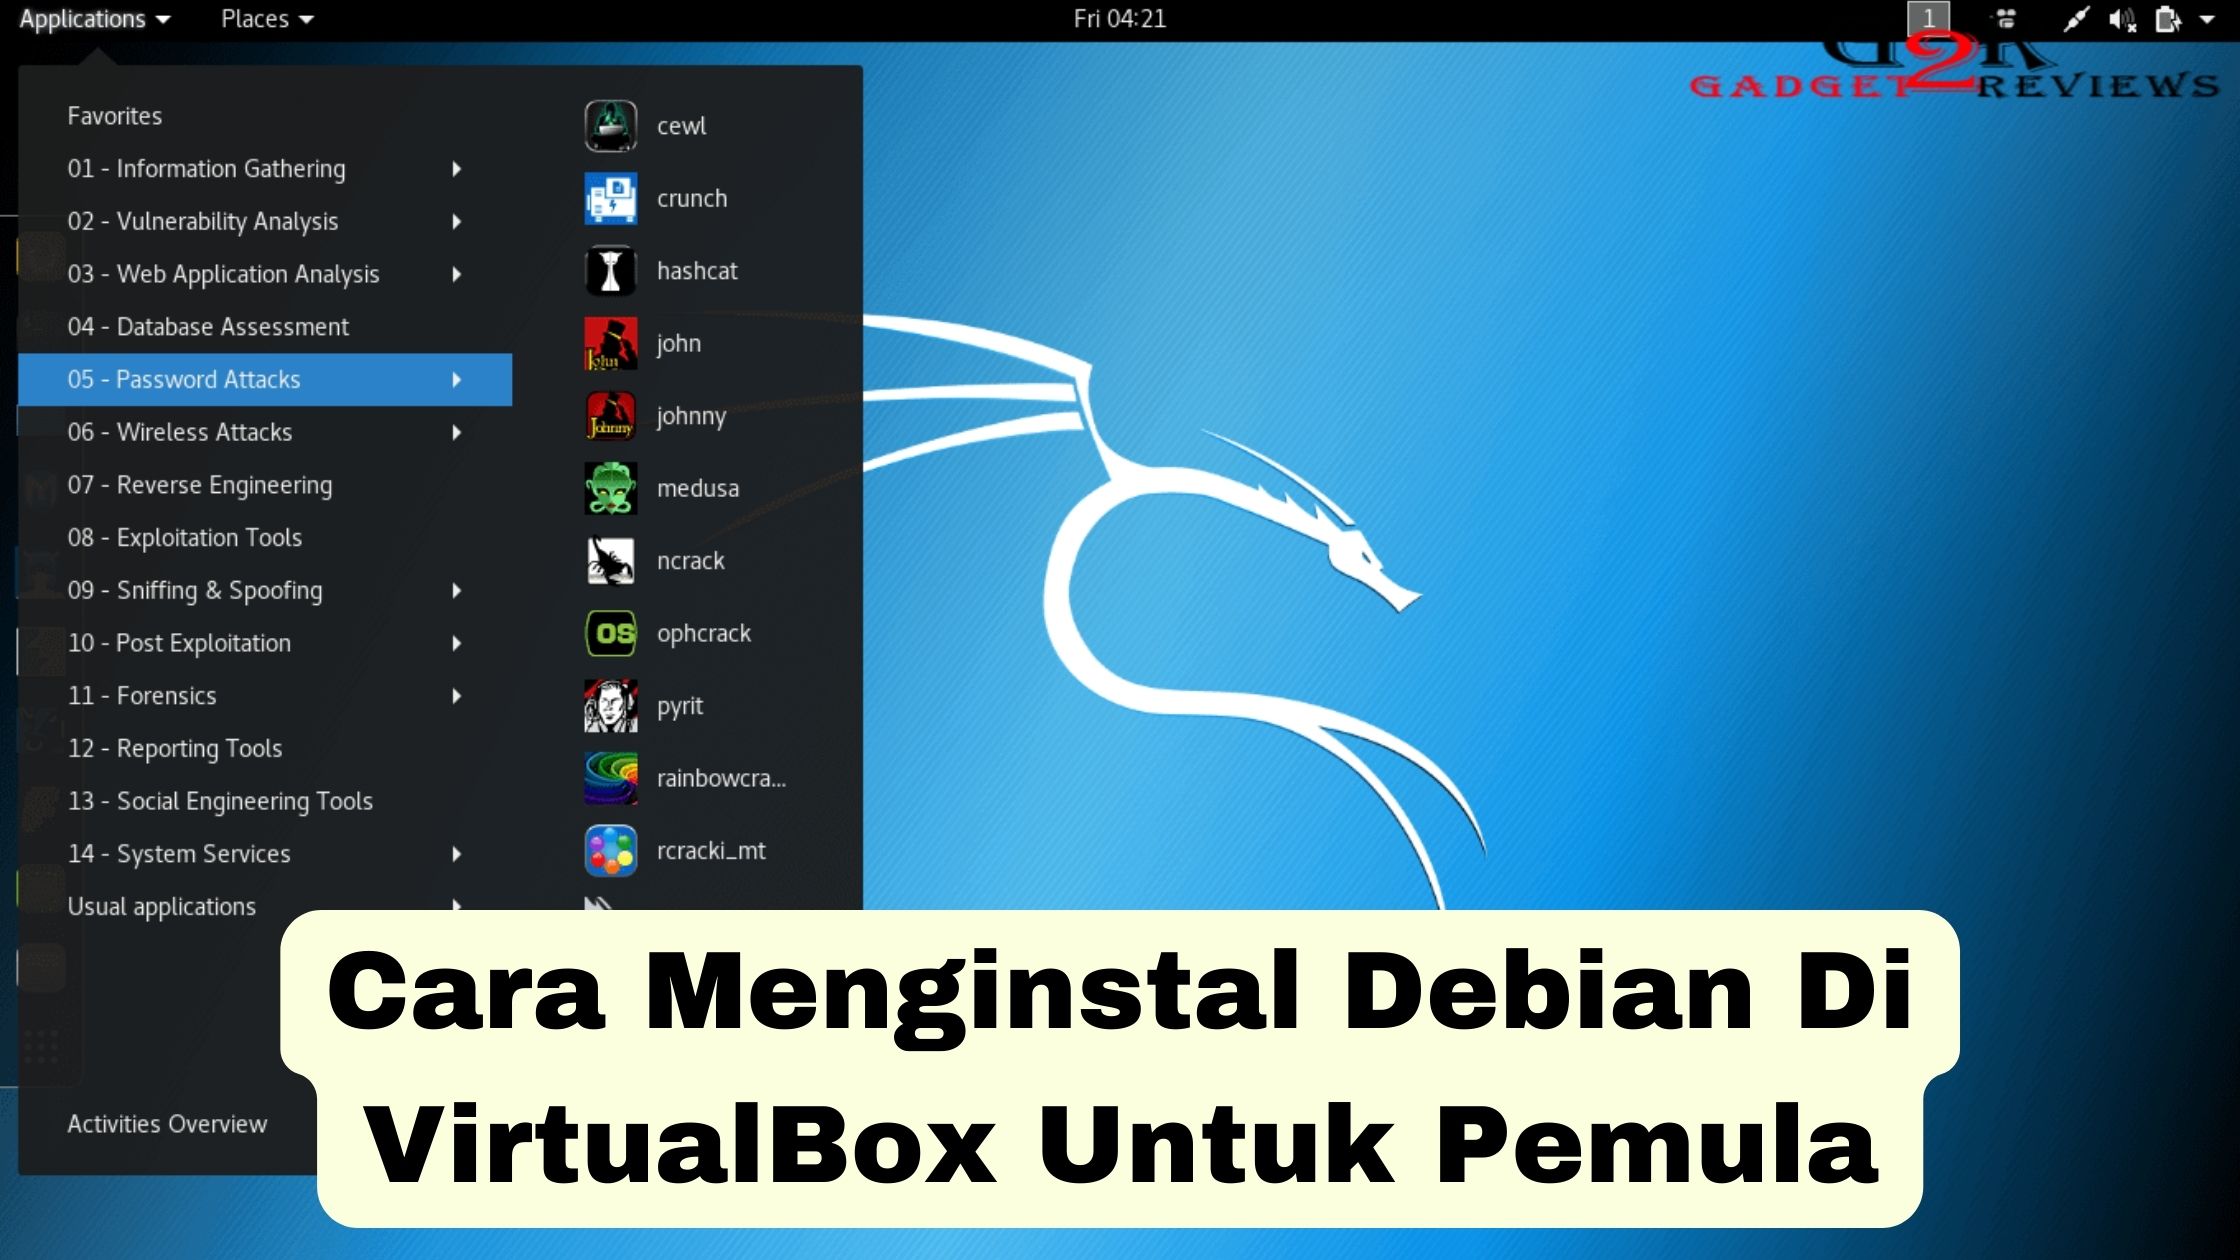 Cara Menginstal Debian Di VirtualBox